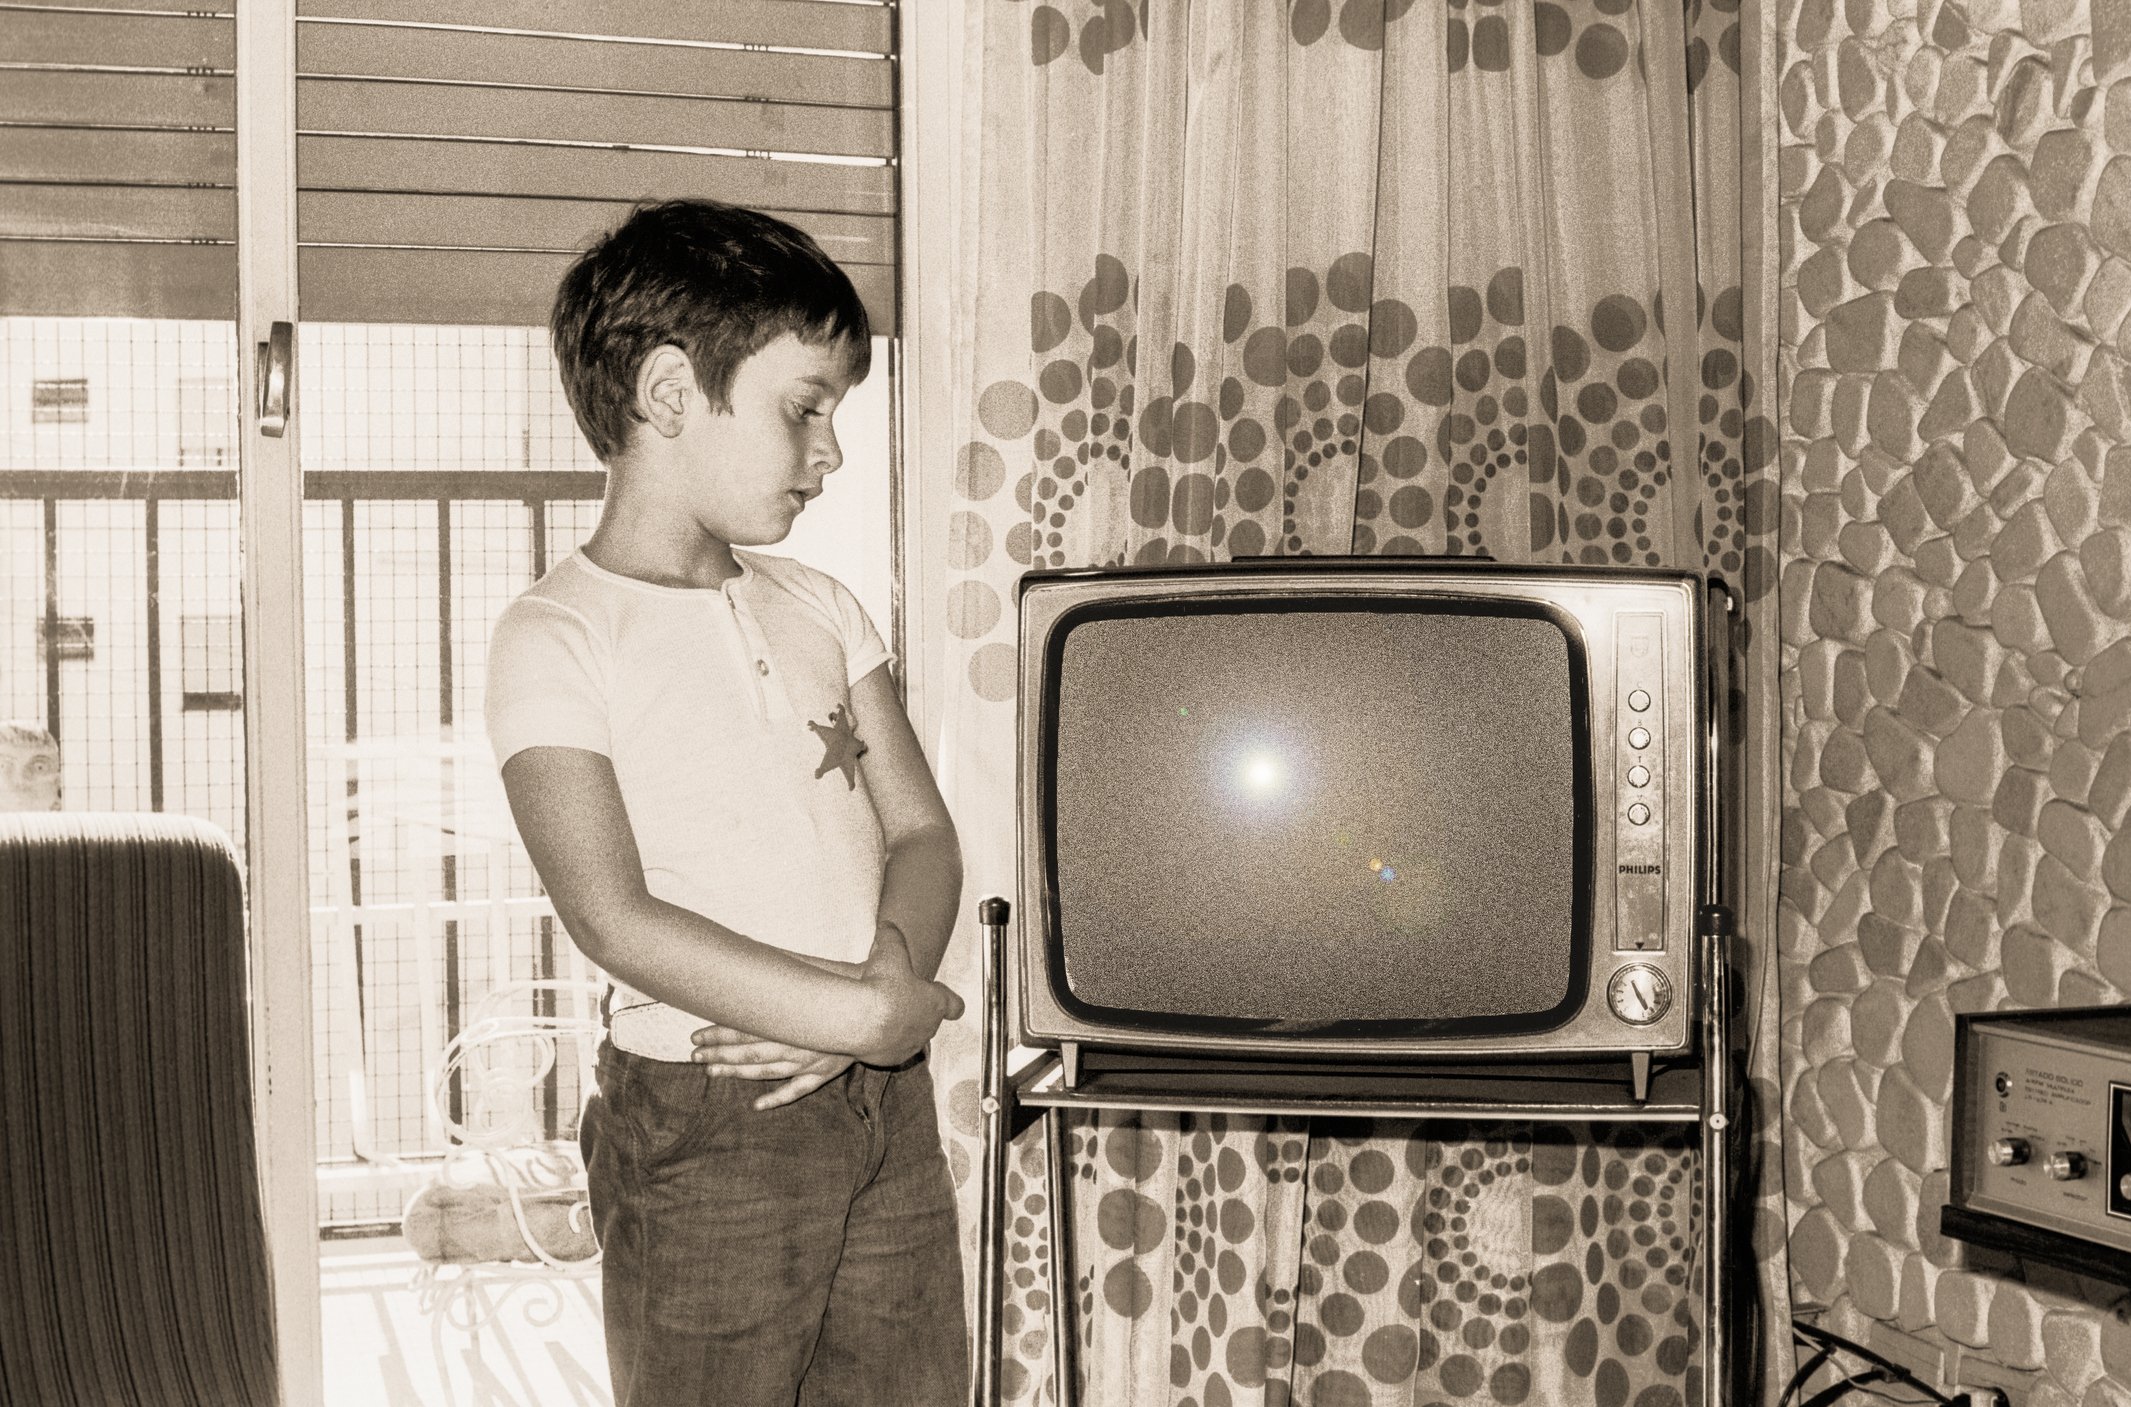 Телевизор читает видео. Ламповый телевизор сигнал 2. Мальчик у телевизора. Мальчик старый телевизор. Транзисторный телевизор.